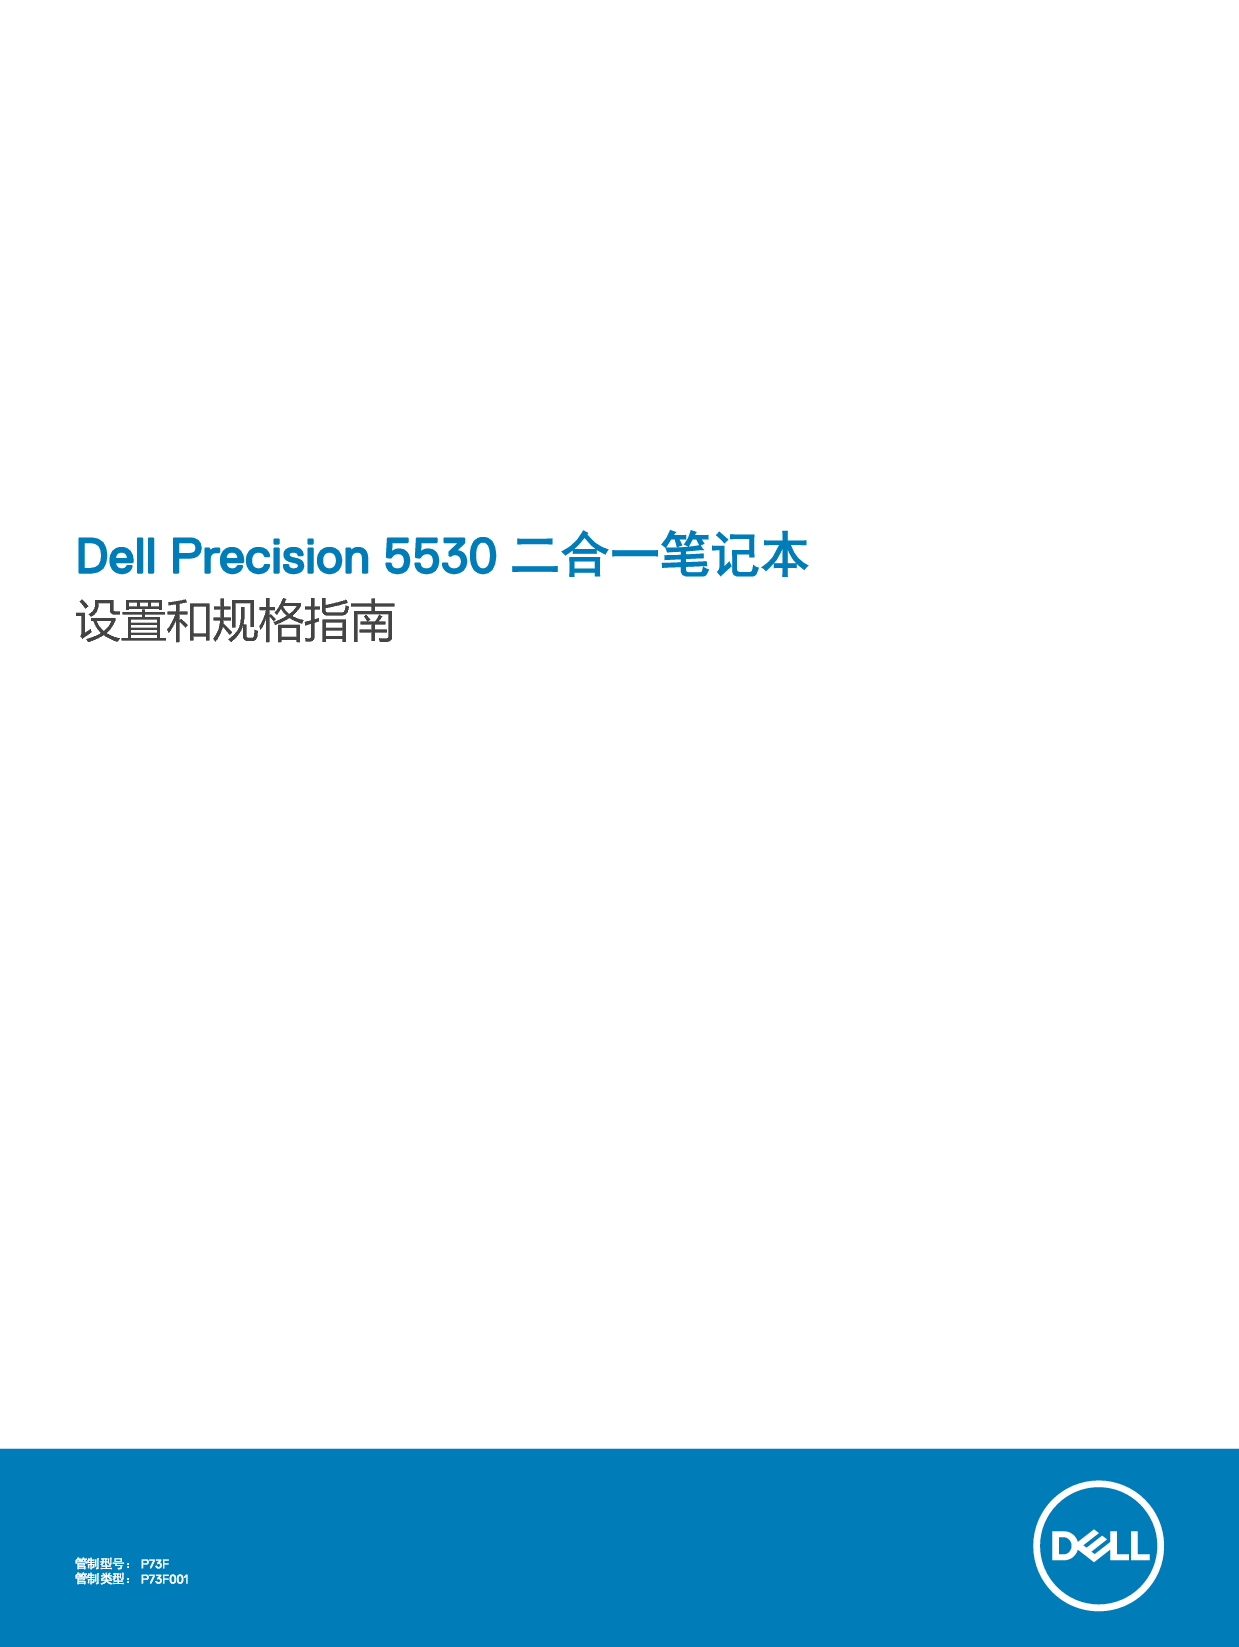 戴尔 Dell Precision 5530 2-IN-1 用户手册 封面